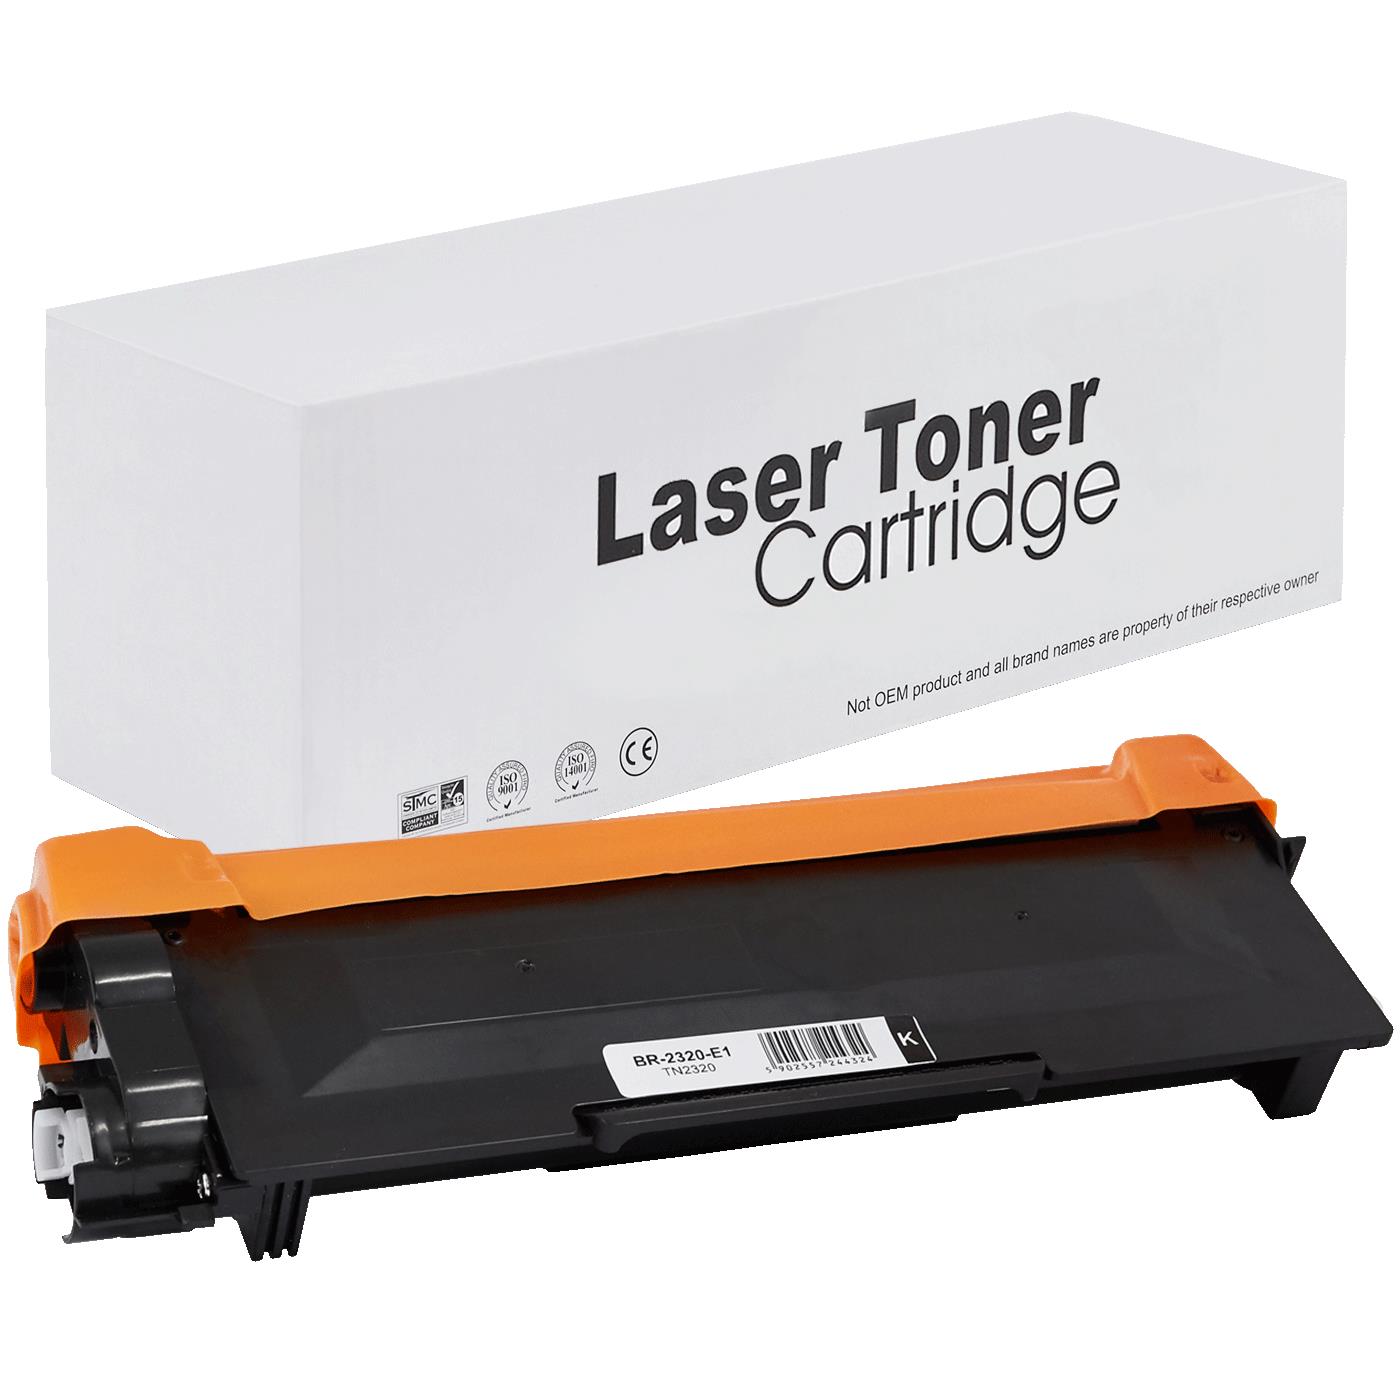 съвместима тонер касета за принтери и печатащи устройства на Brother HL-L 2360 DW Toner BR-2320 | TN2320 / TN2310 / TN-2320. Ниски цени, прецизно изпълнение, високо качество.